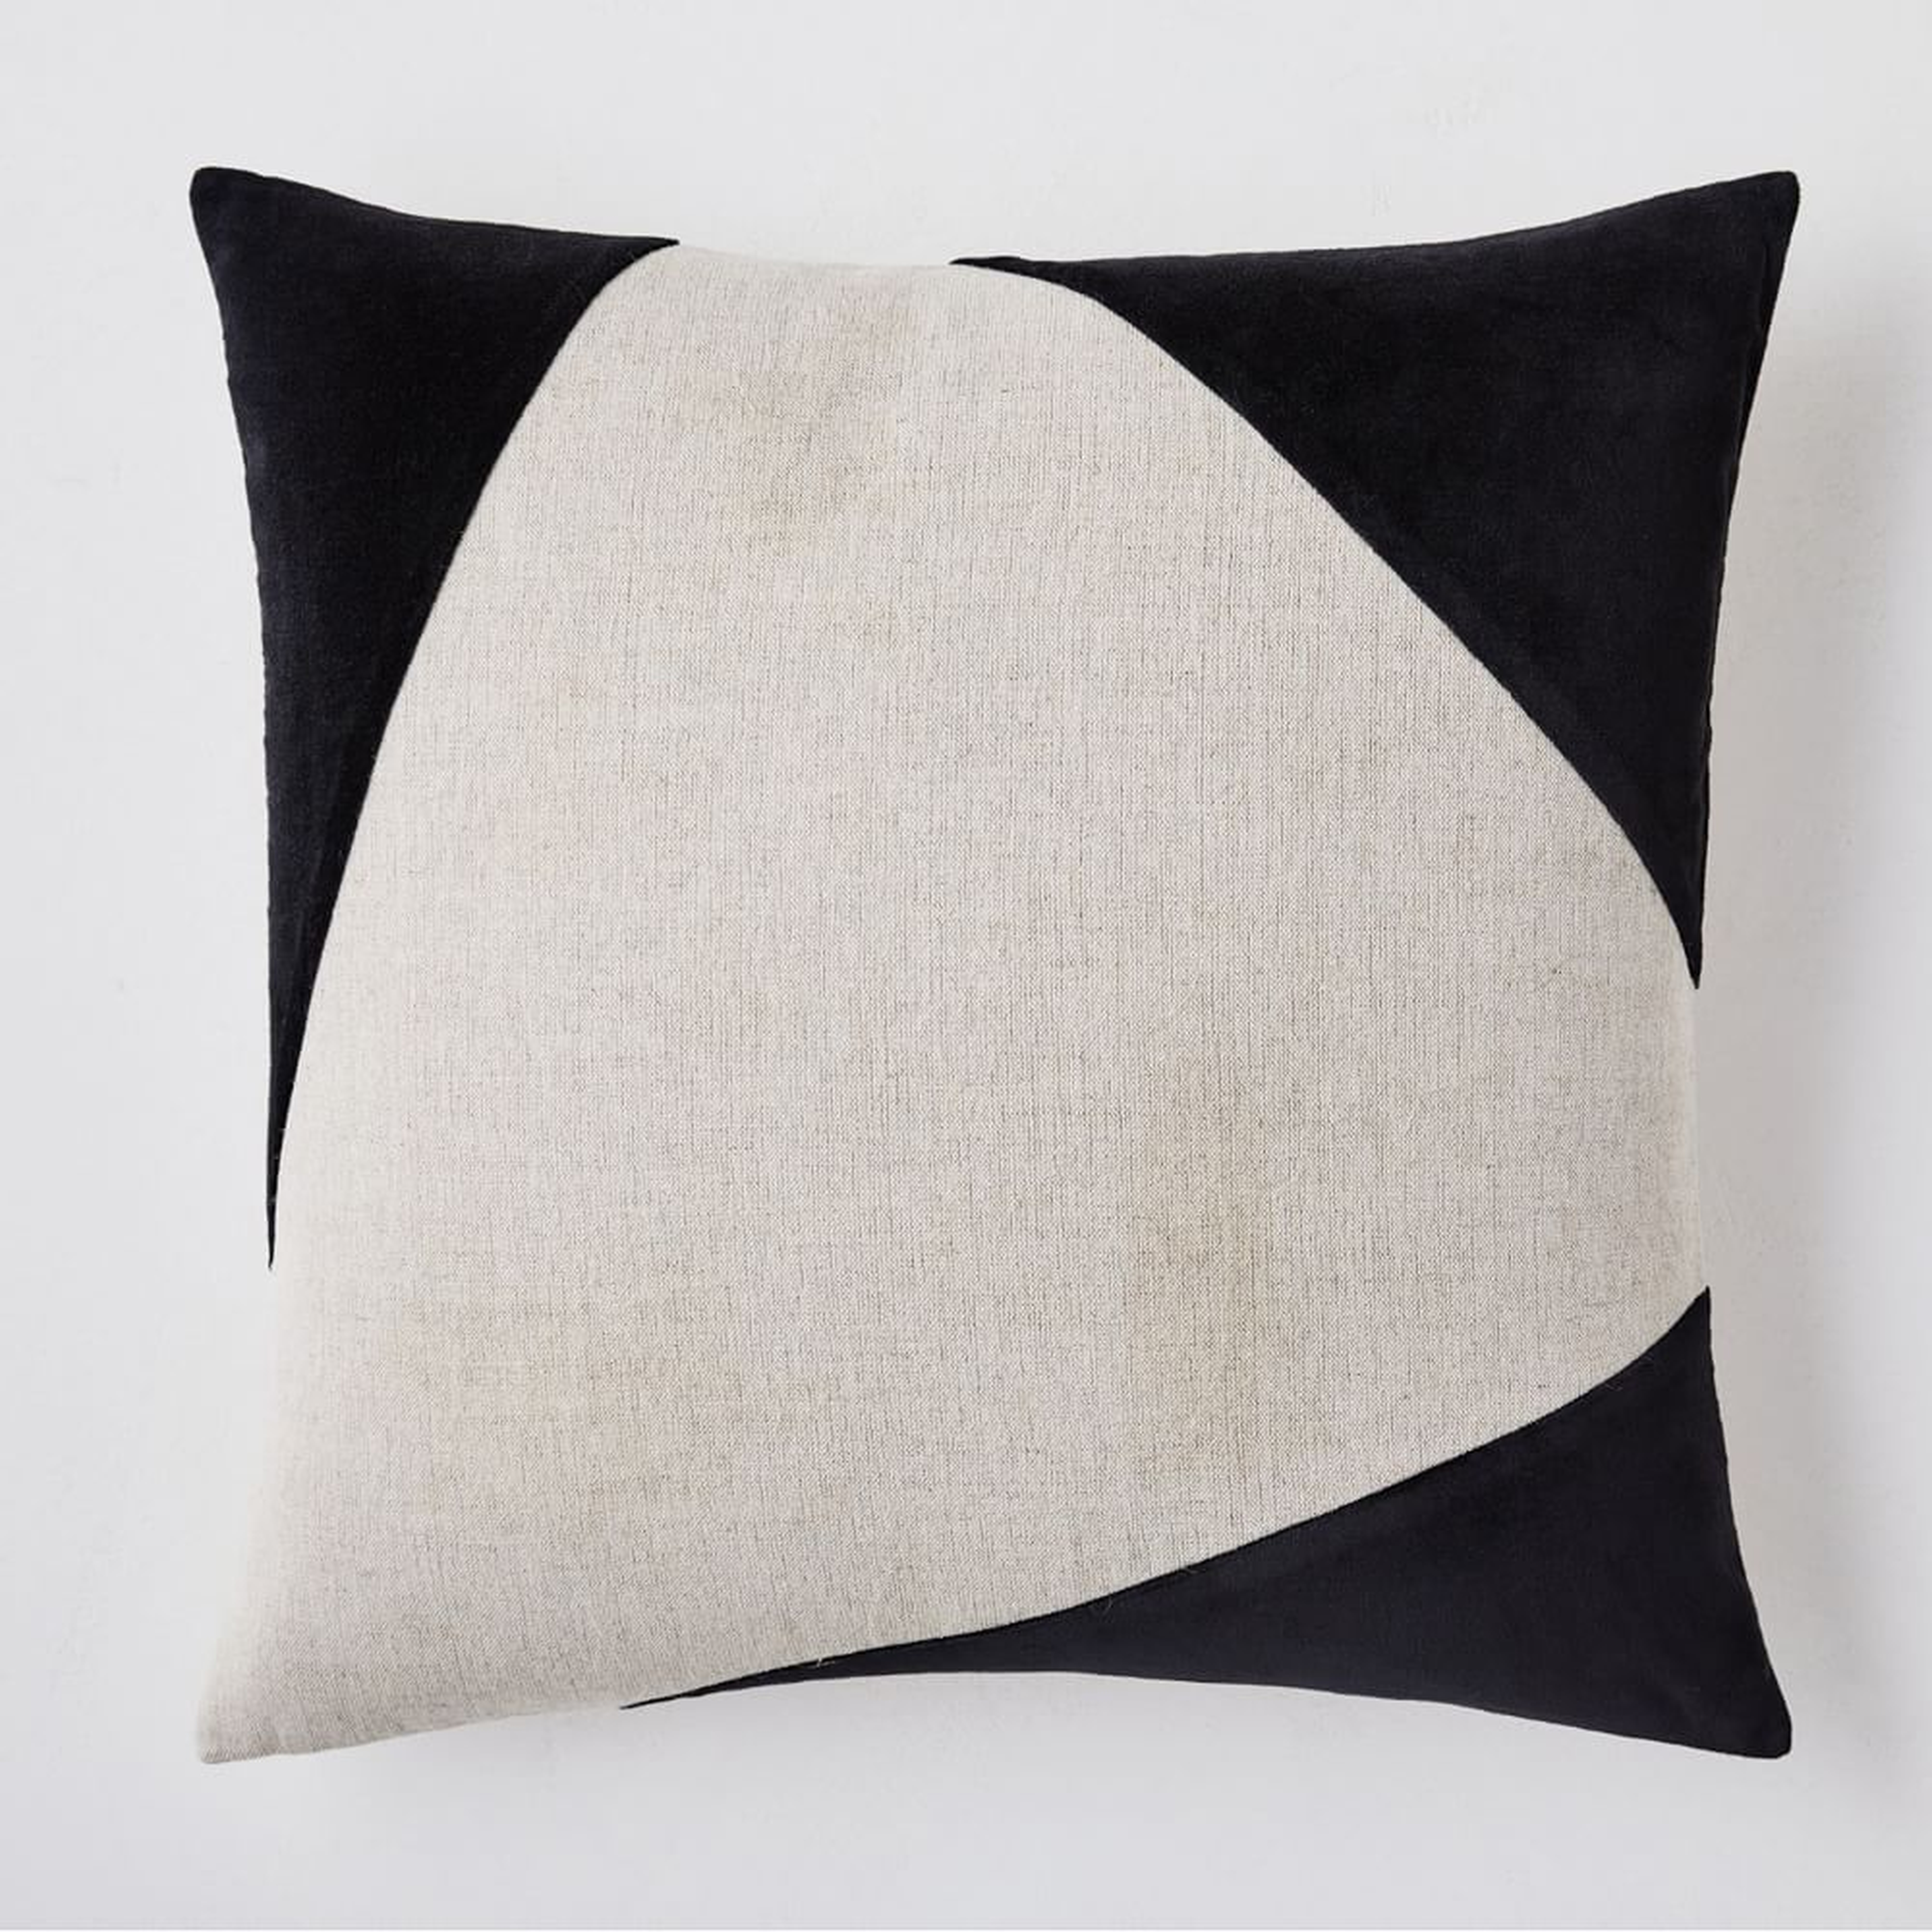 Cotton Linen + Velvet Corners Pillow Cover, 20"x20", Black, Set of 2 - West Elm